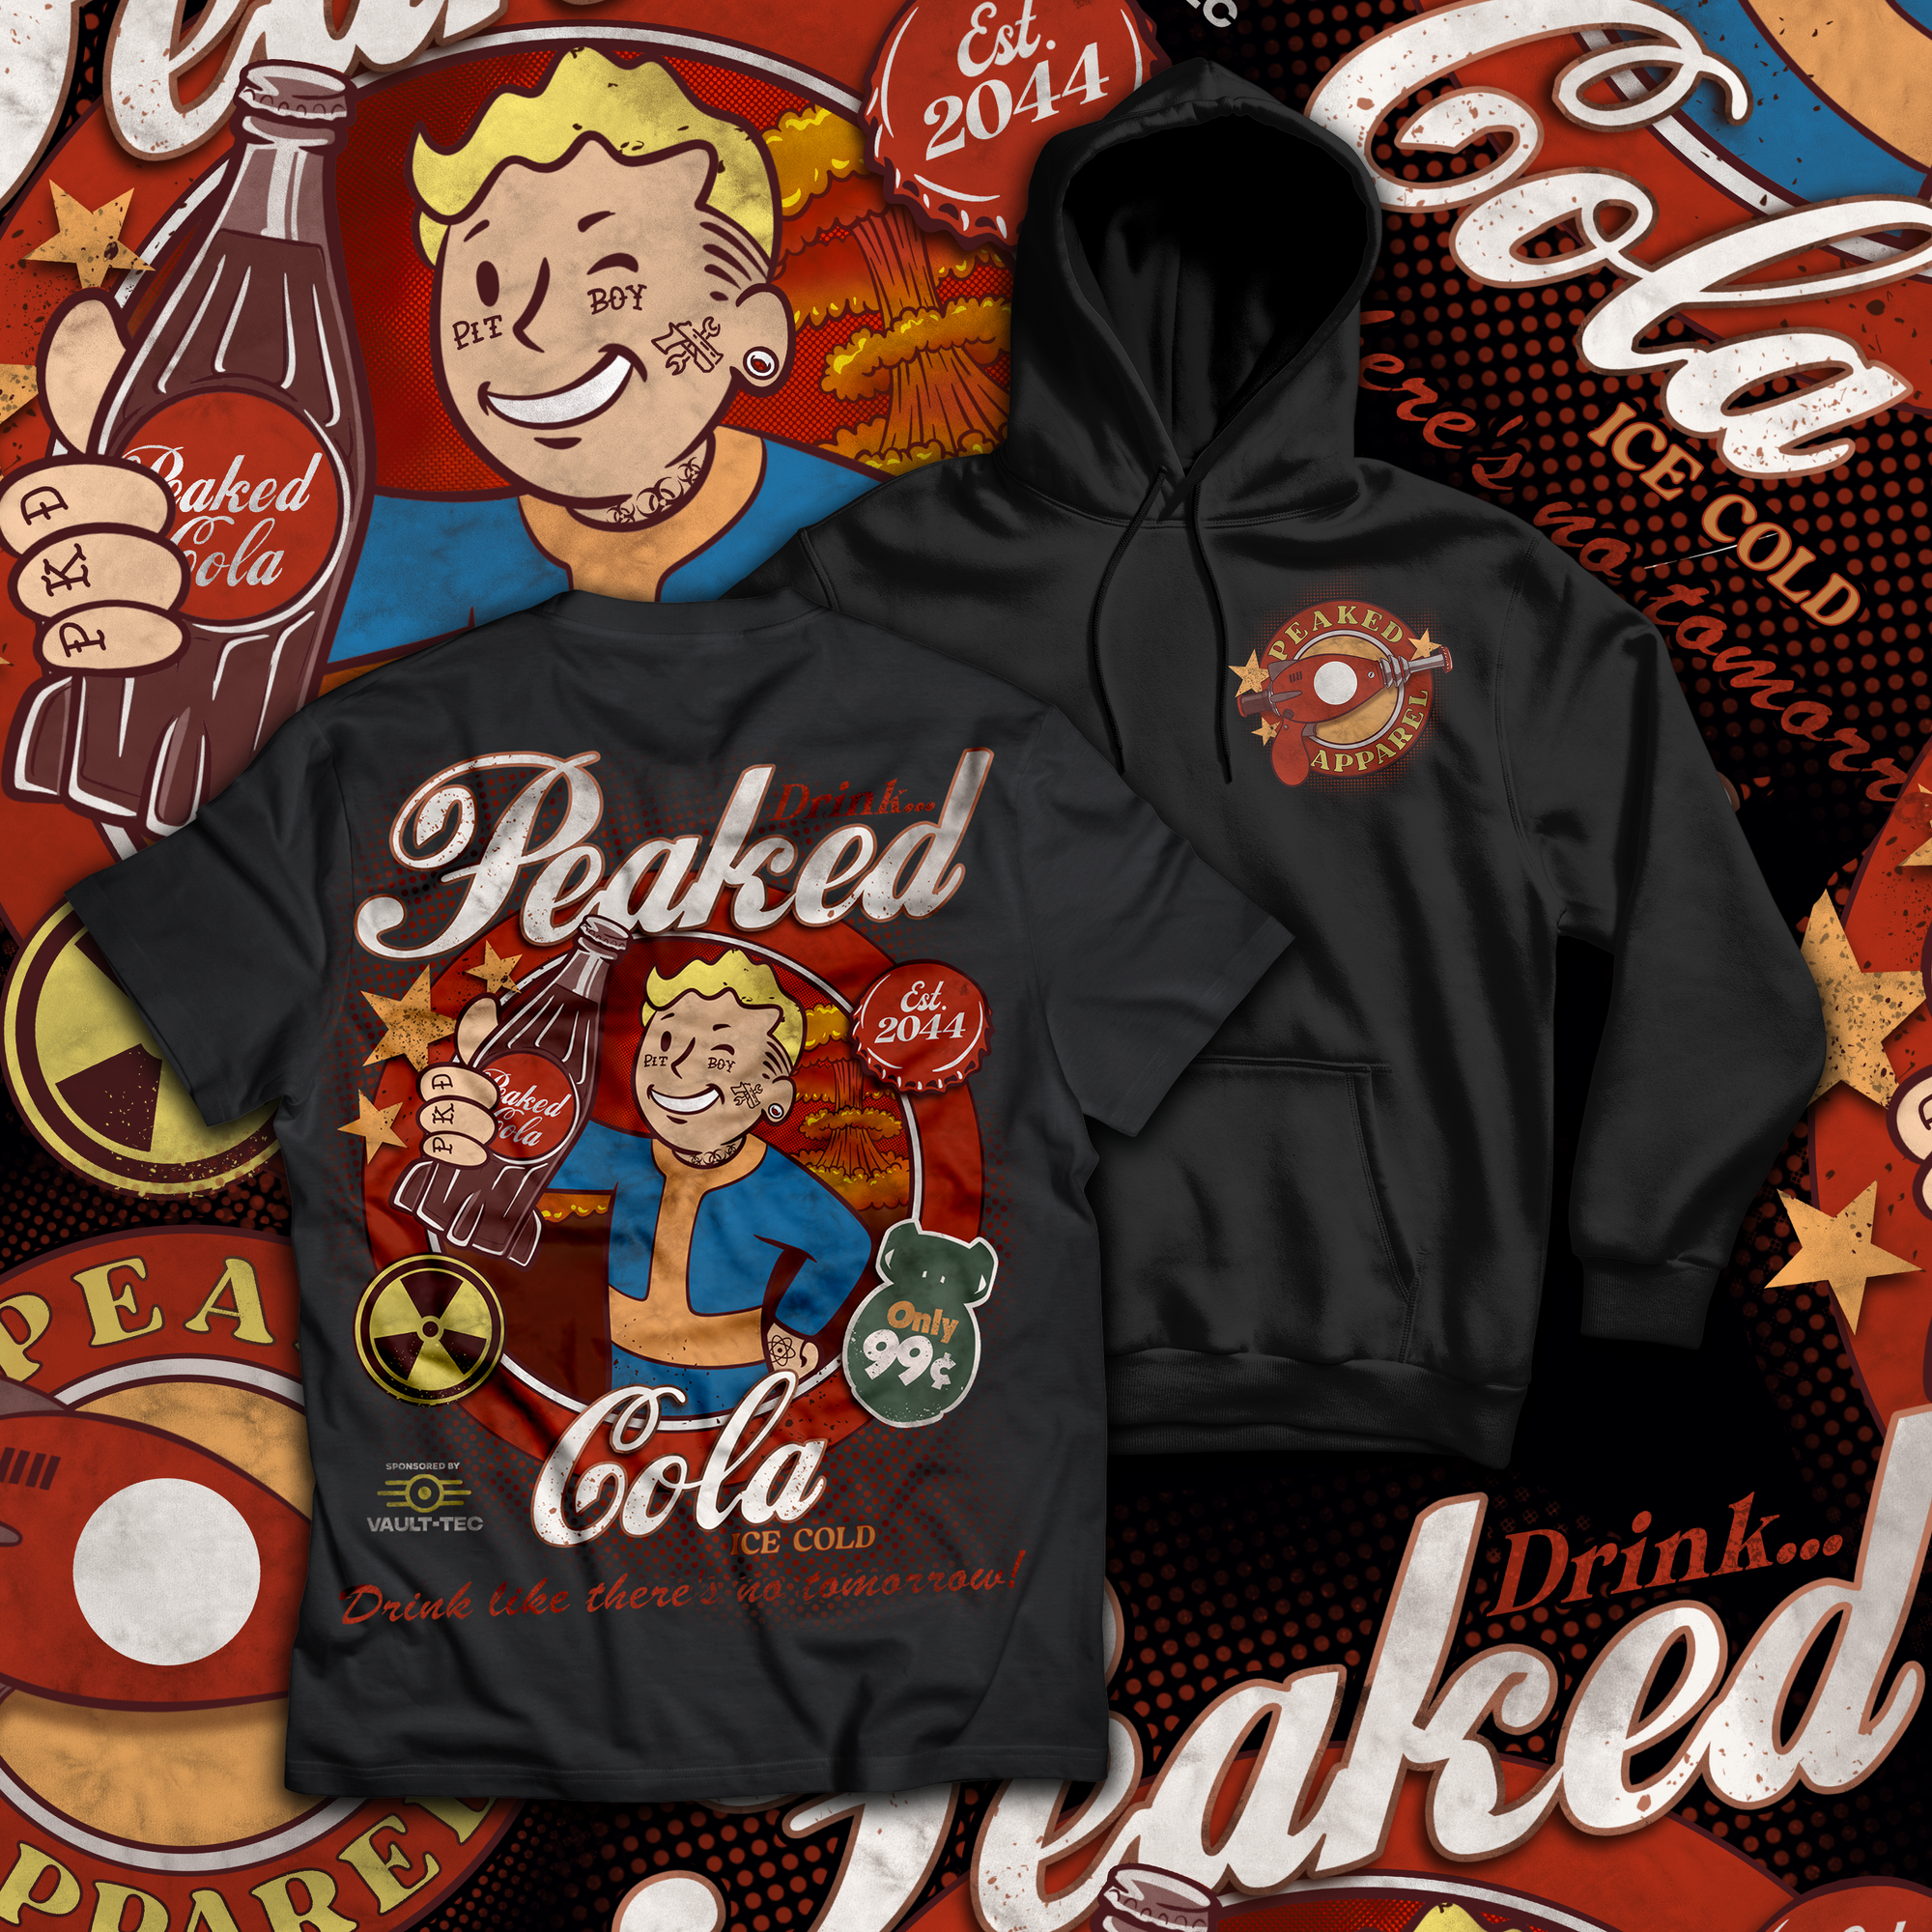 Peaked Cola T Shirt / Hoodie